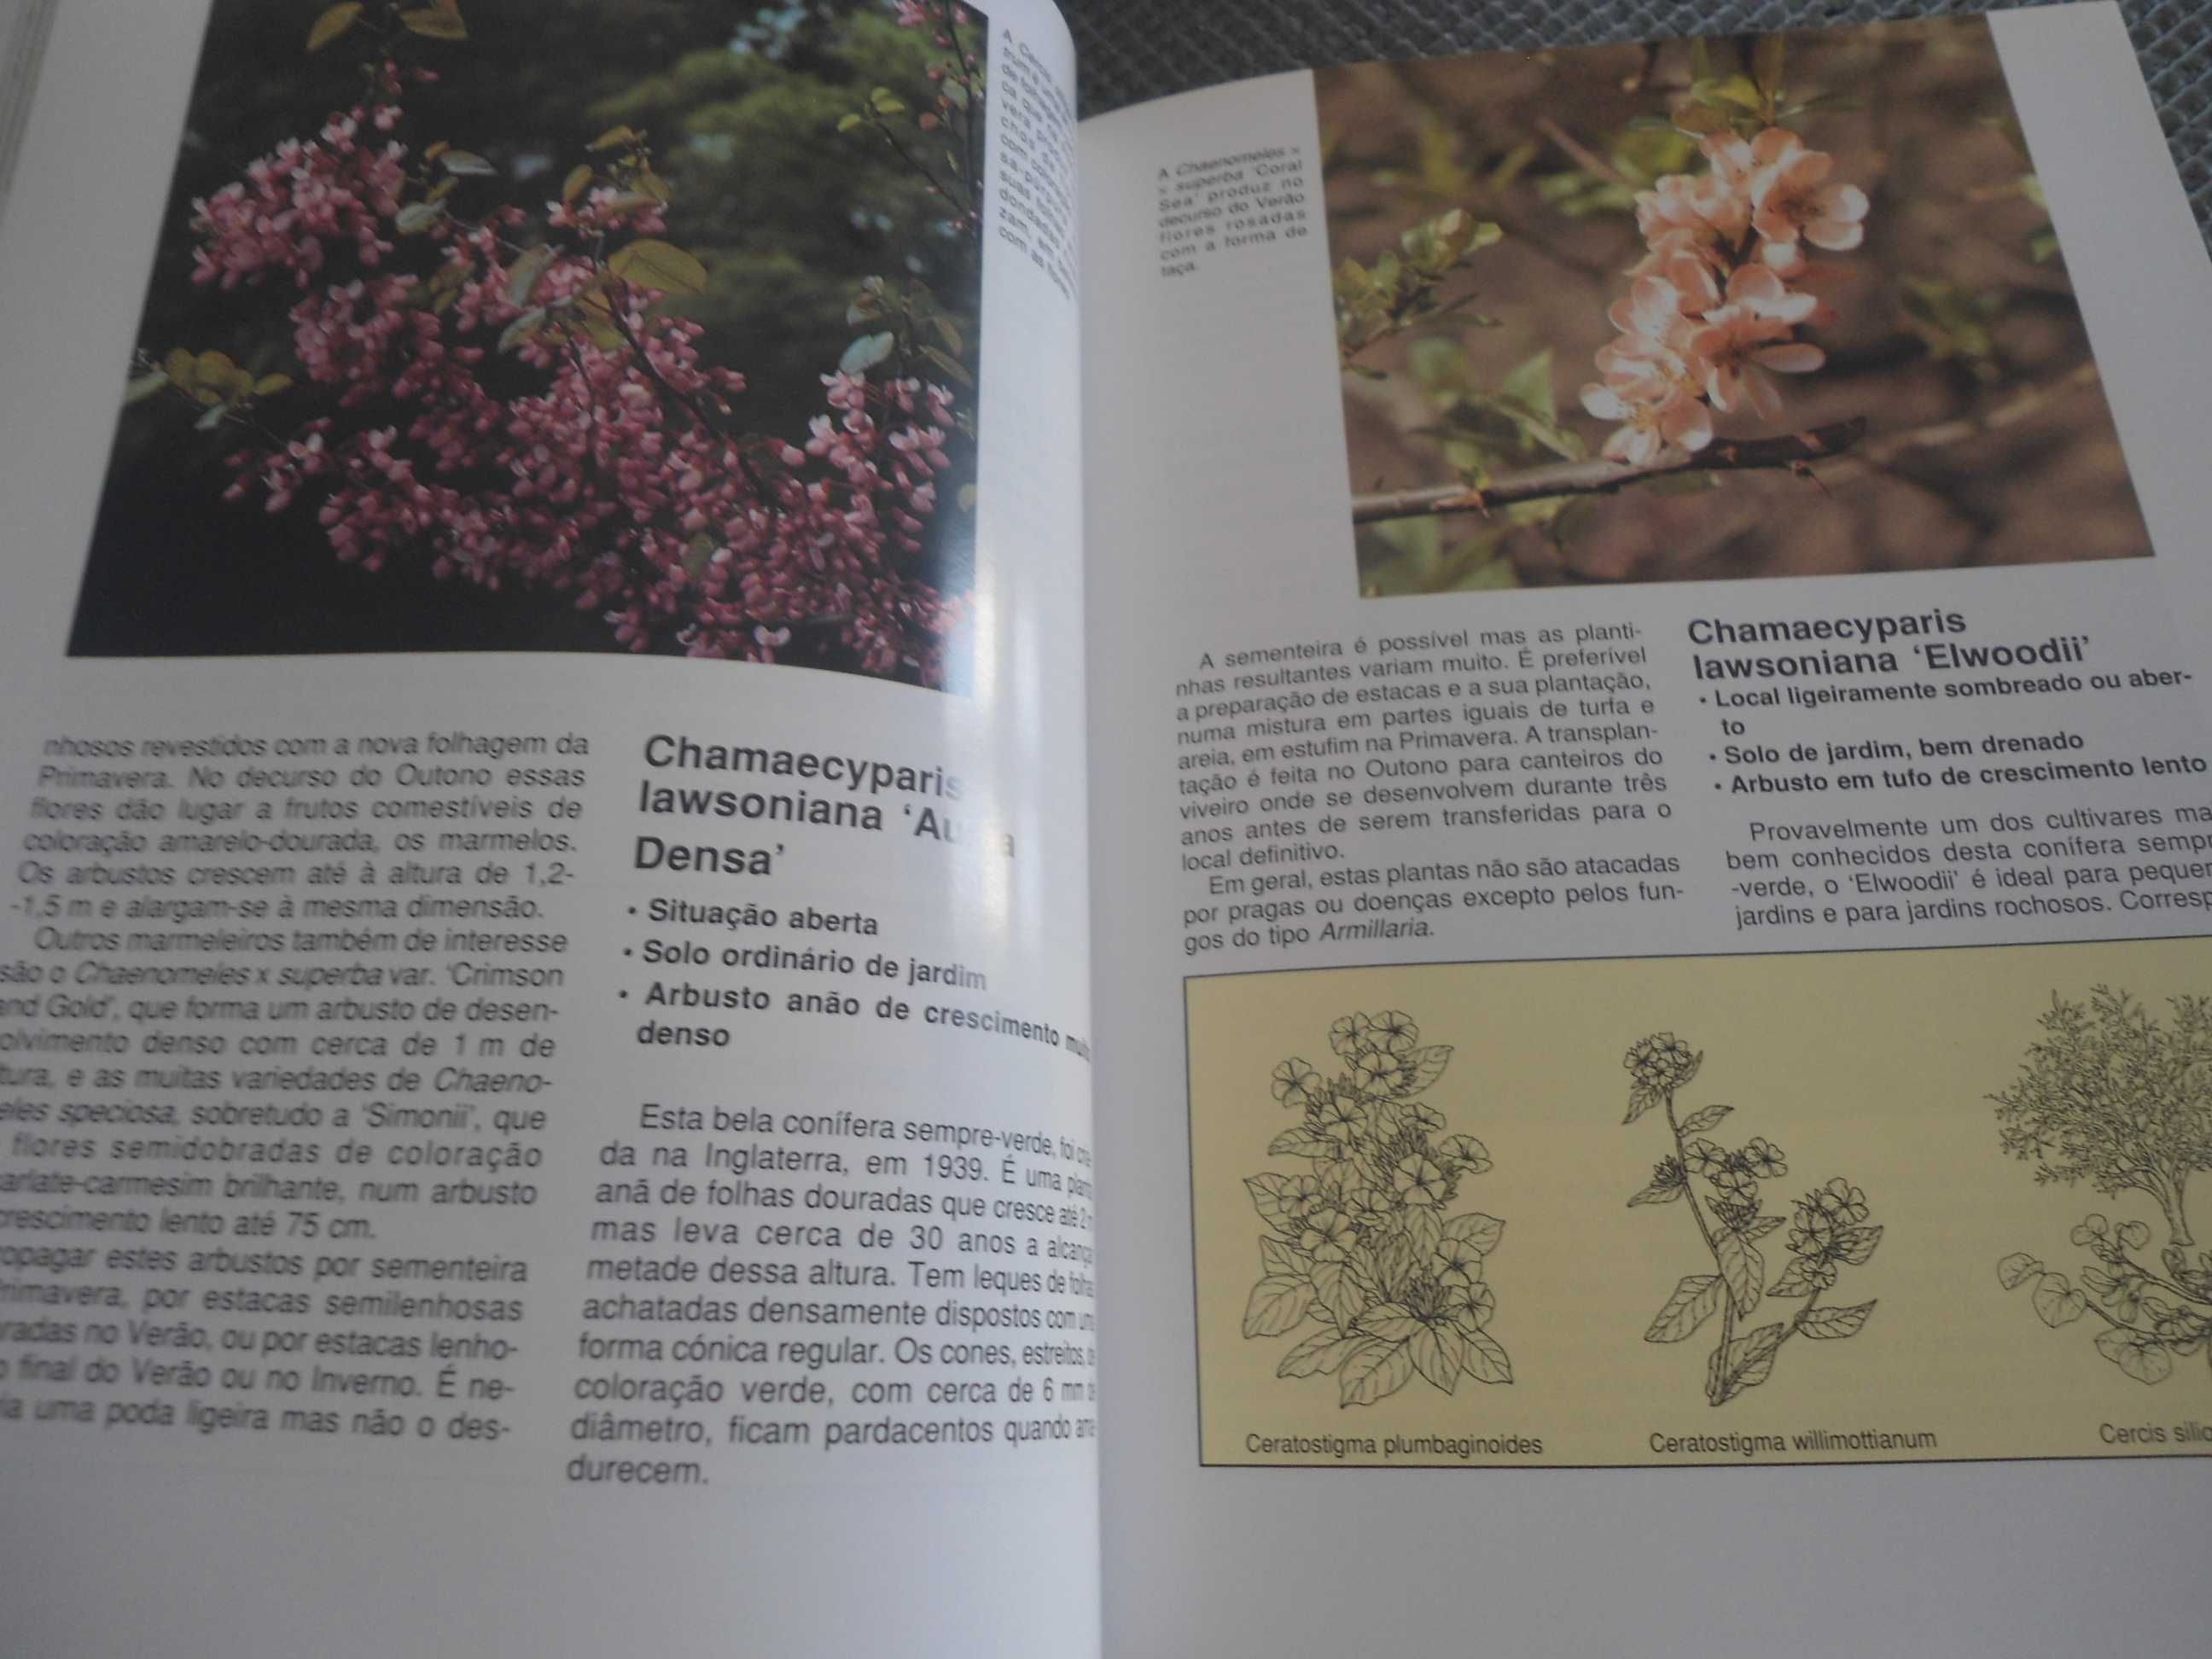 Plantas de Jardim (2 volumes) por David Squire